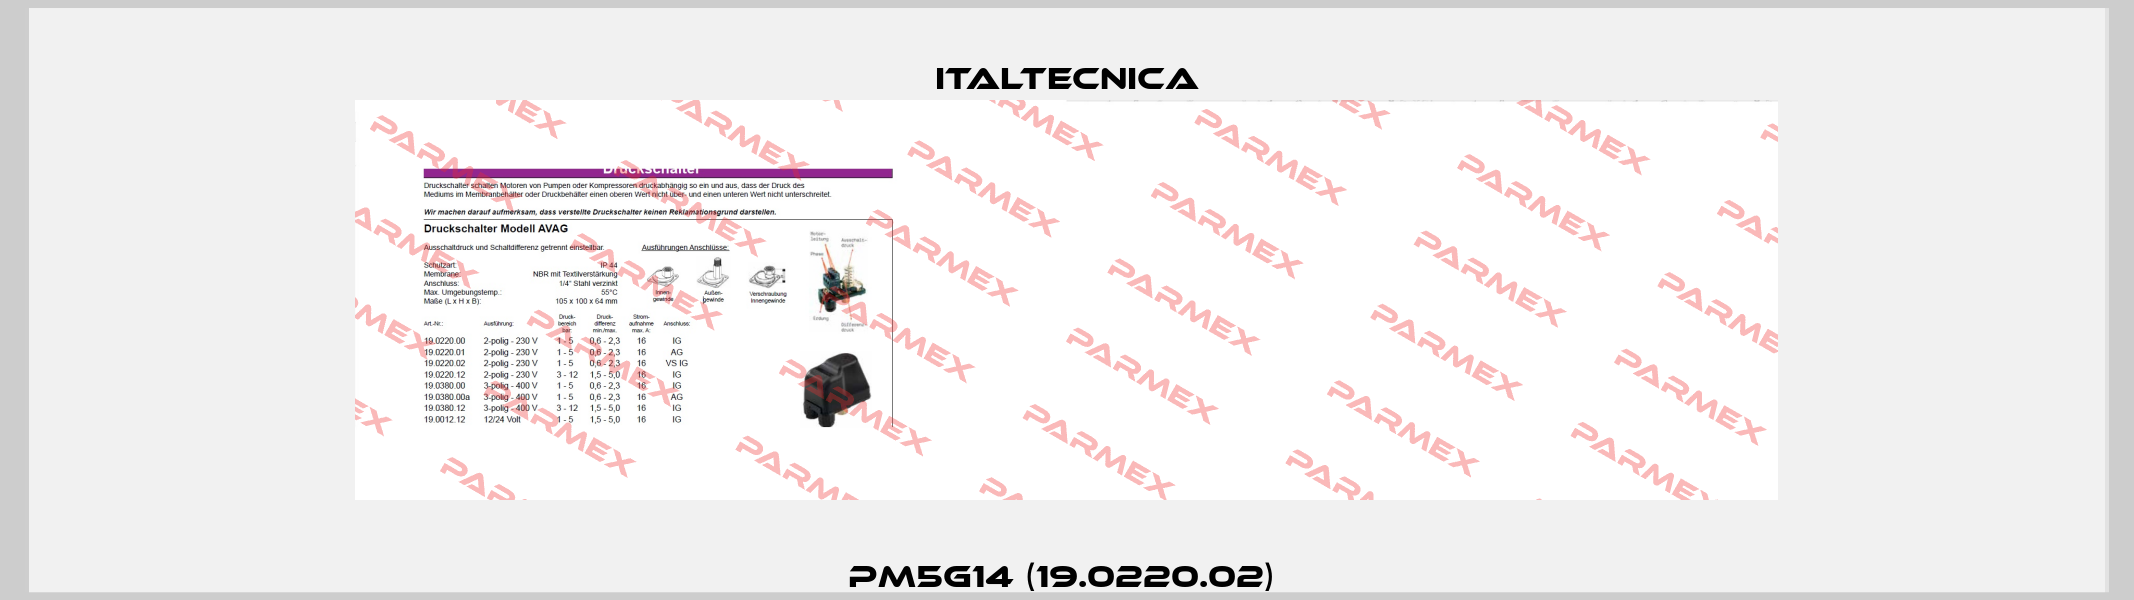 PM5G14 (19.0220.02)  Italtecnica